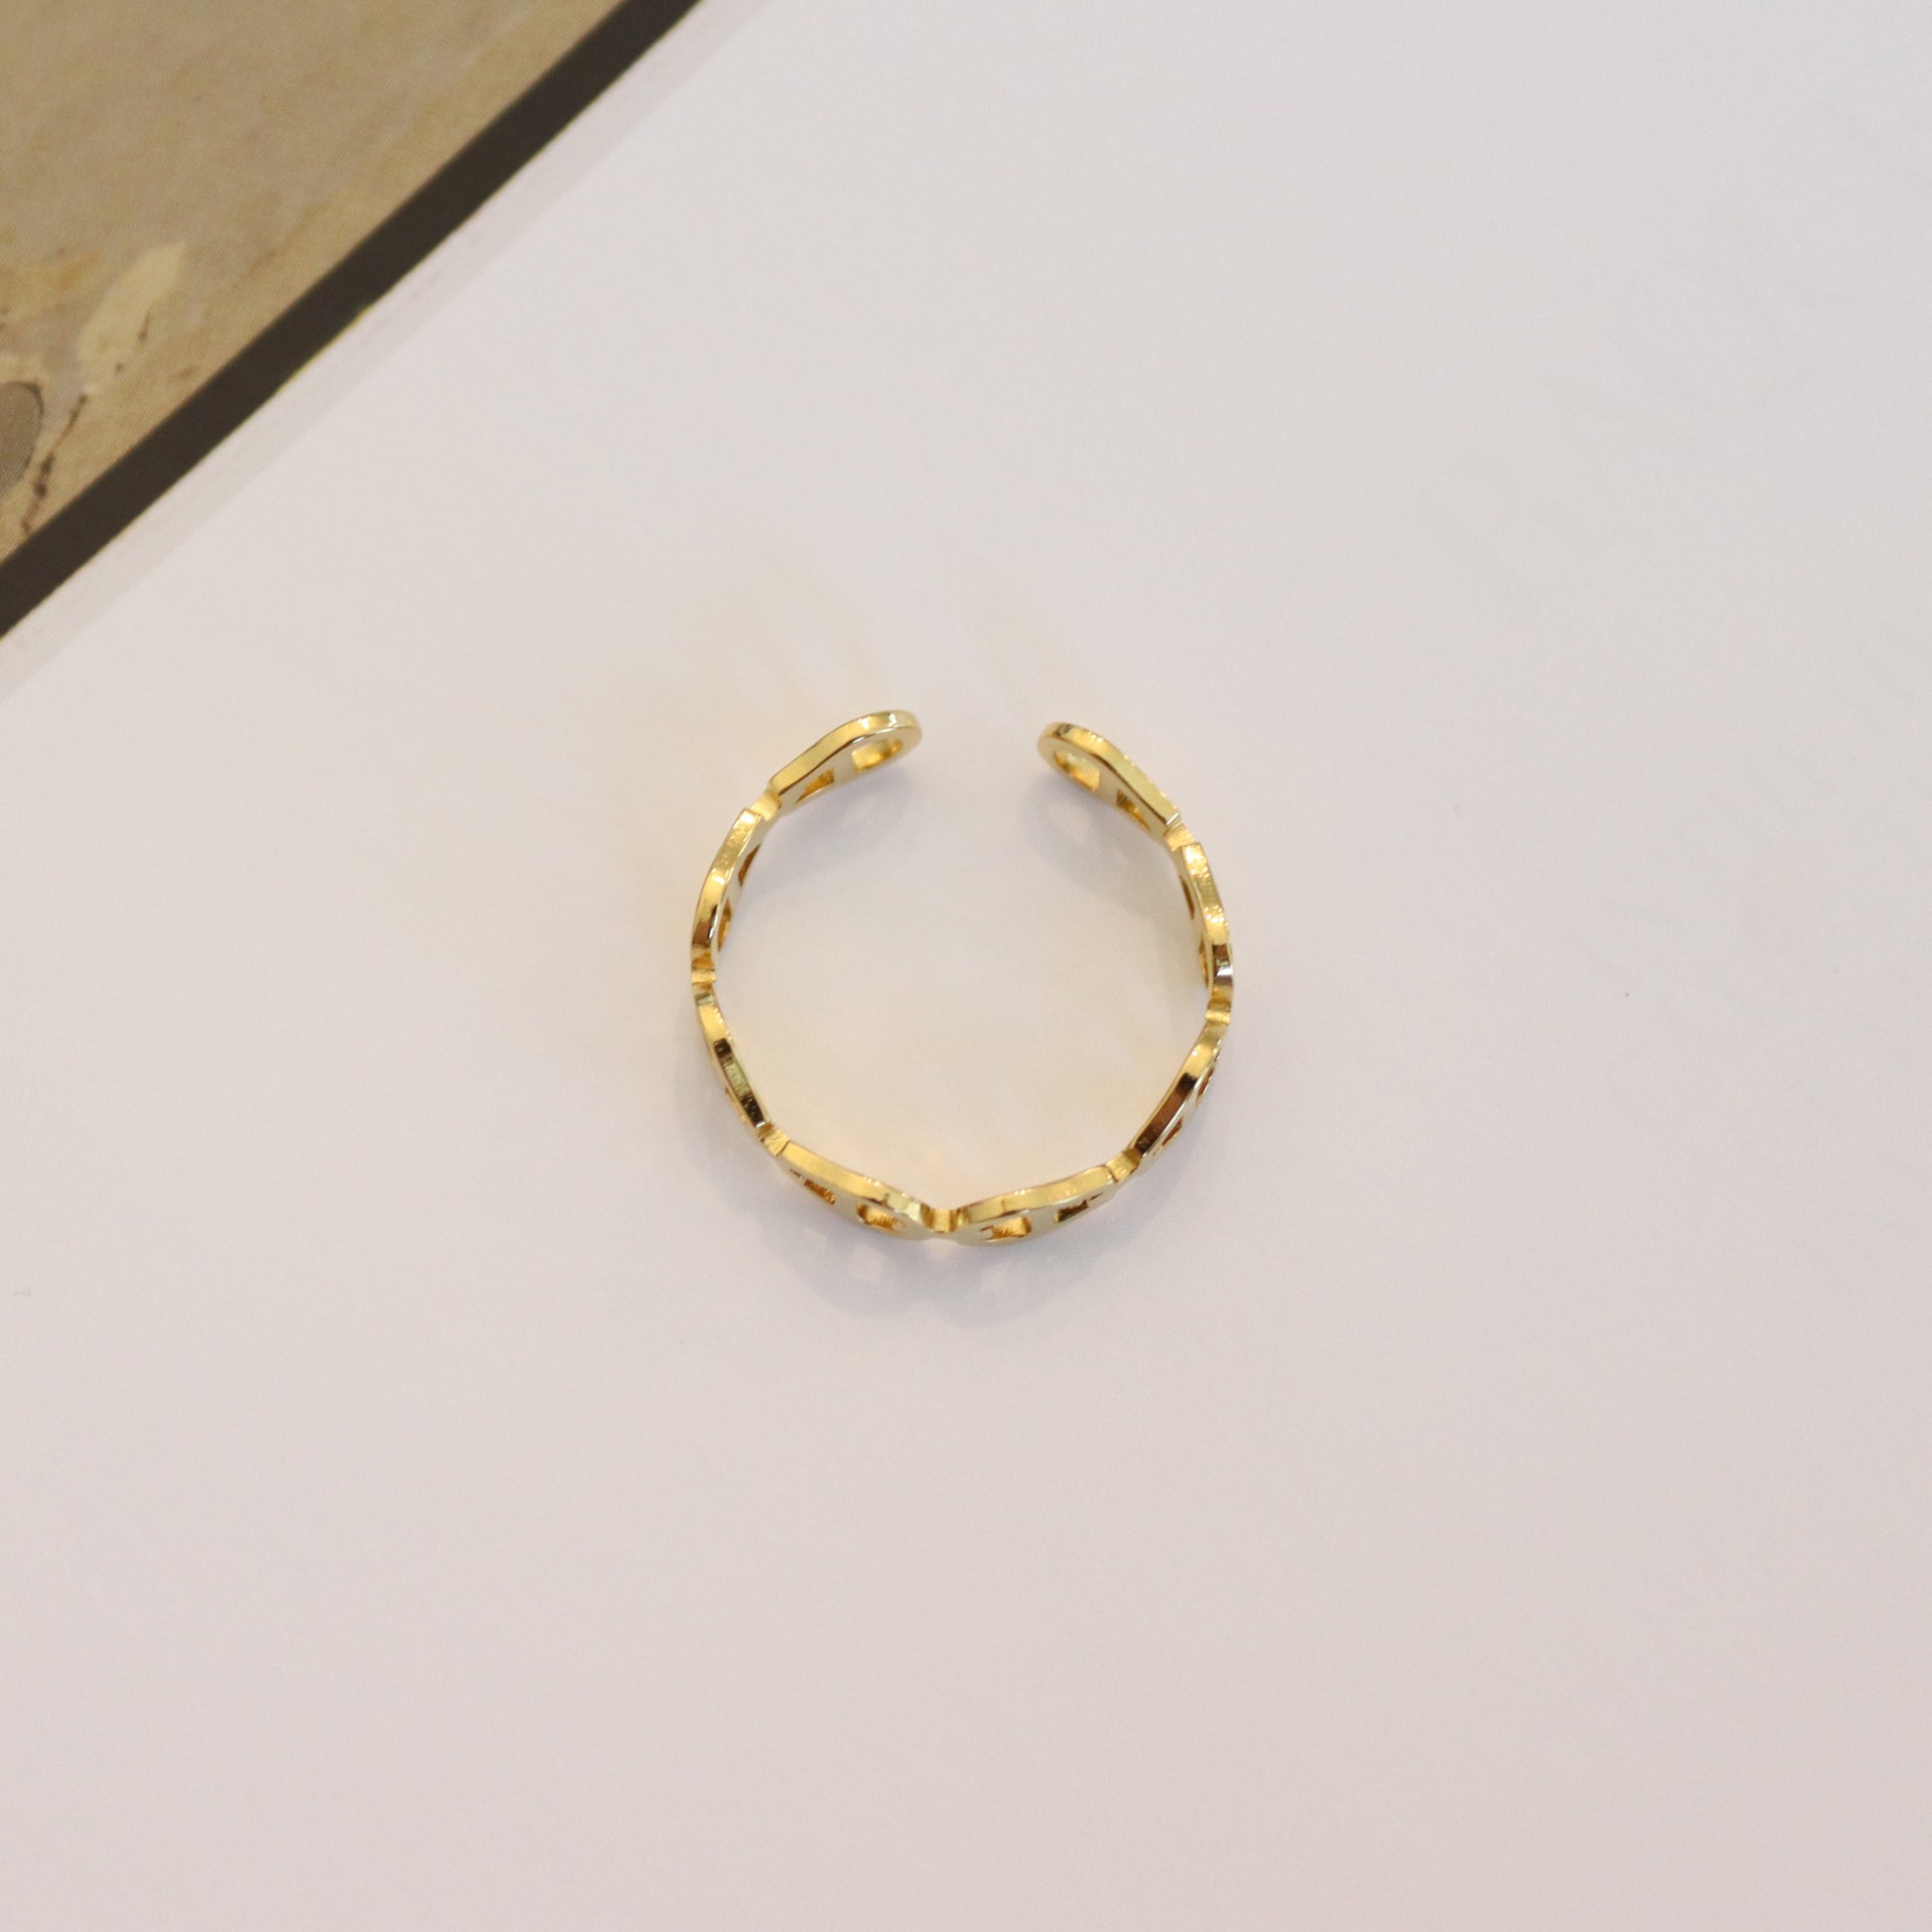 AIG Design Ring - Kalopsia Accessories